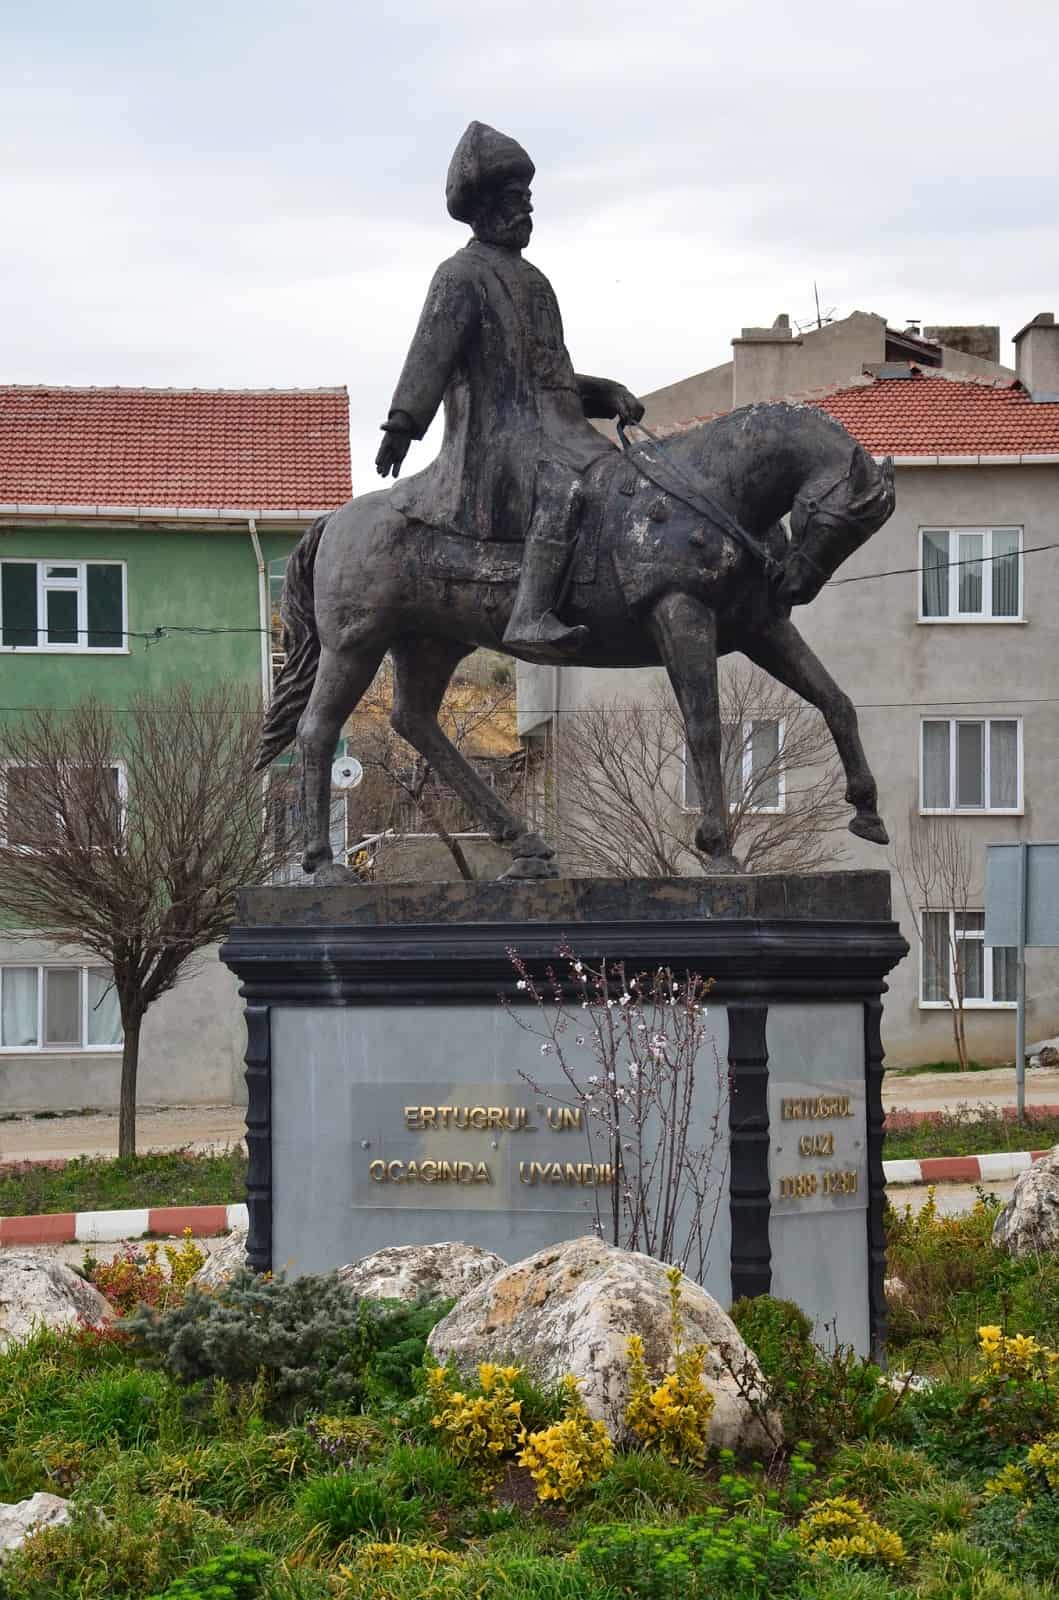 Ertuğrul Gazi monument in Söğüt, Turkey